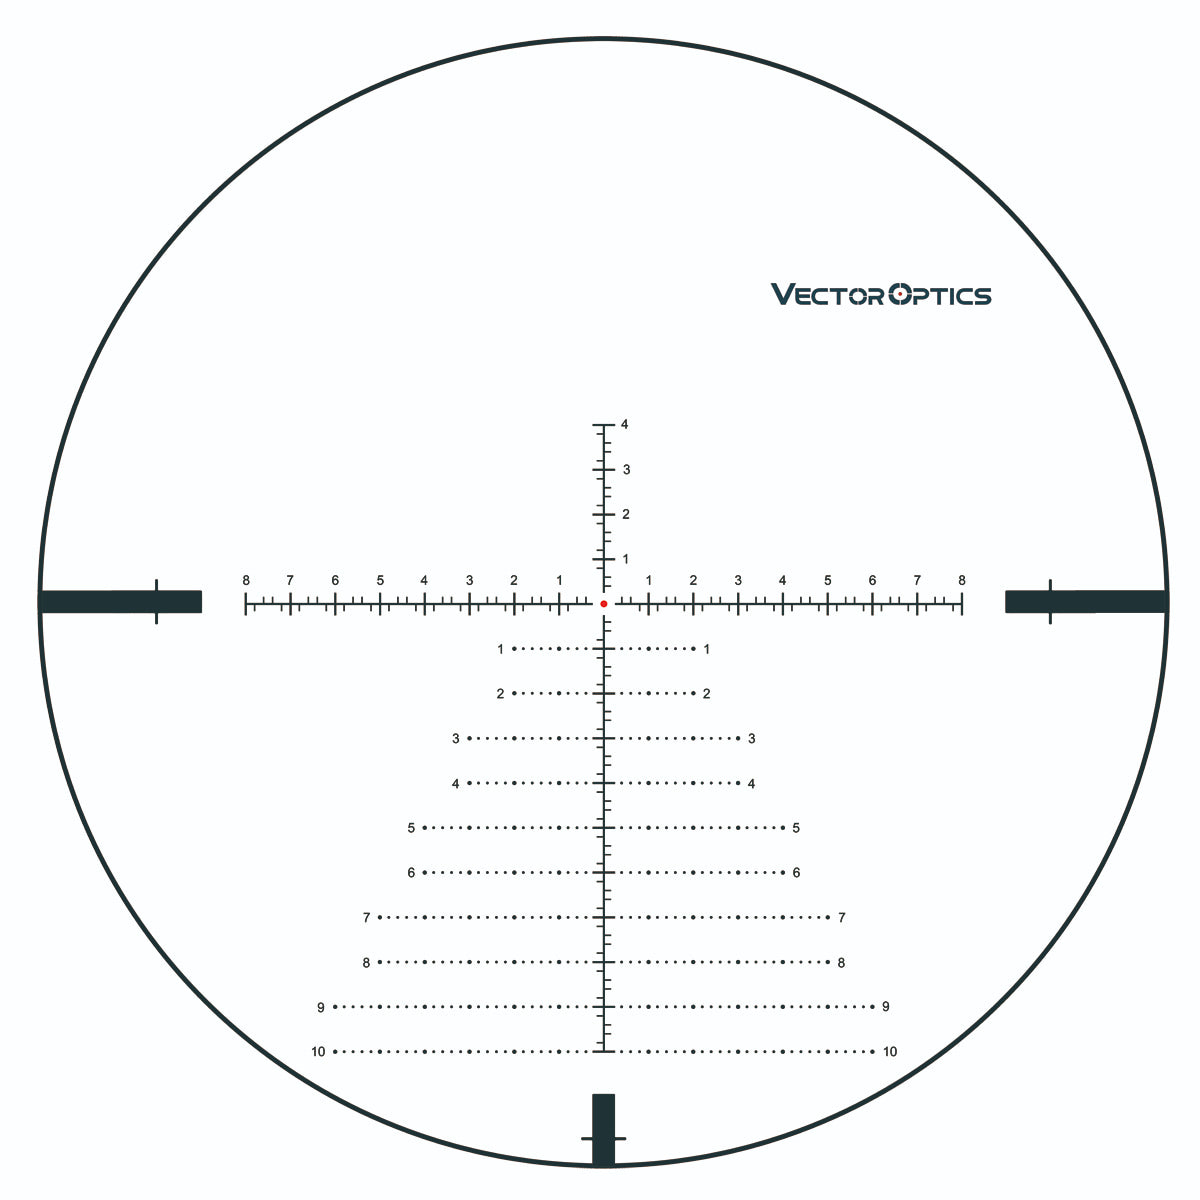 34mm Continental x6 5-30x56 VCT FFP Riflescope